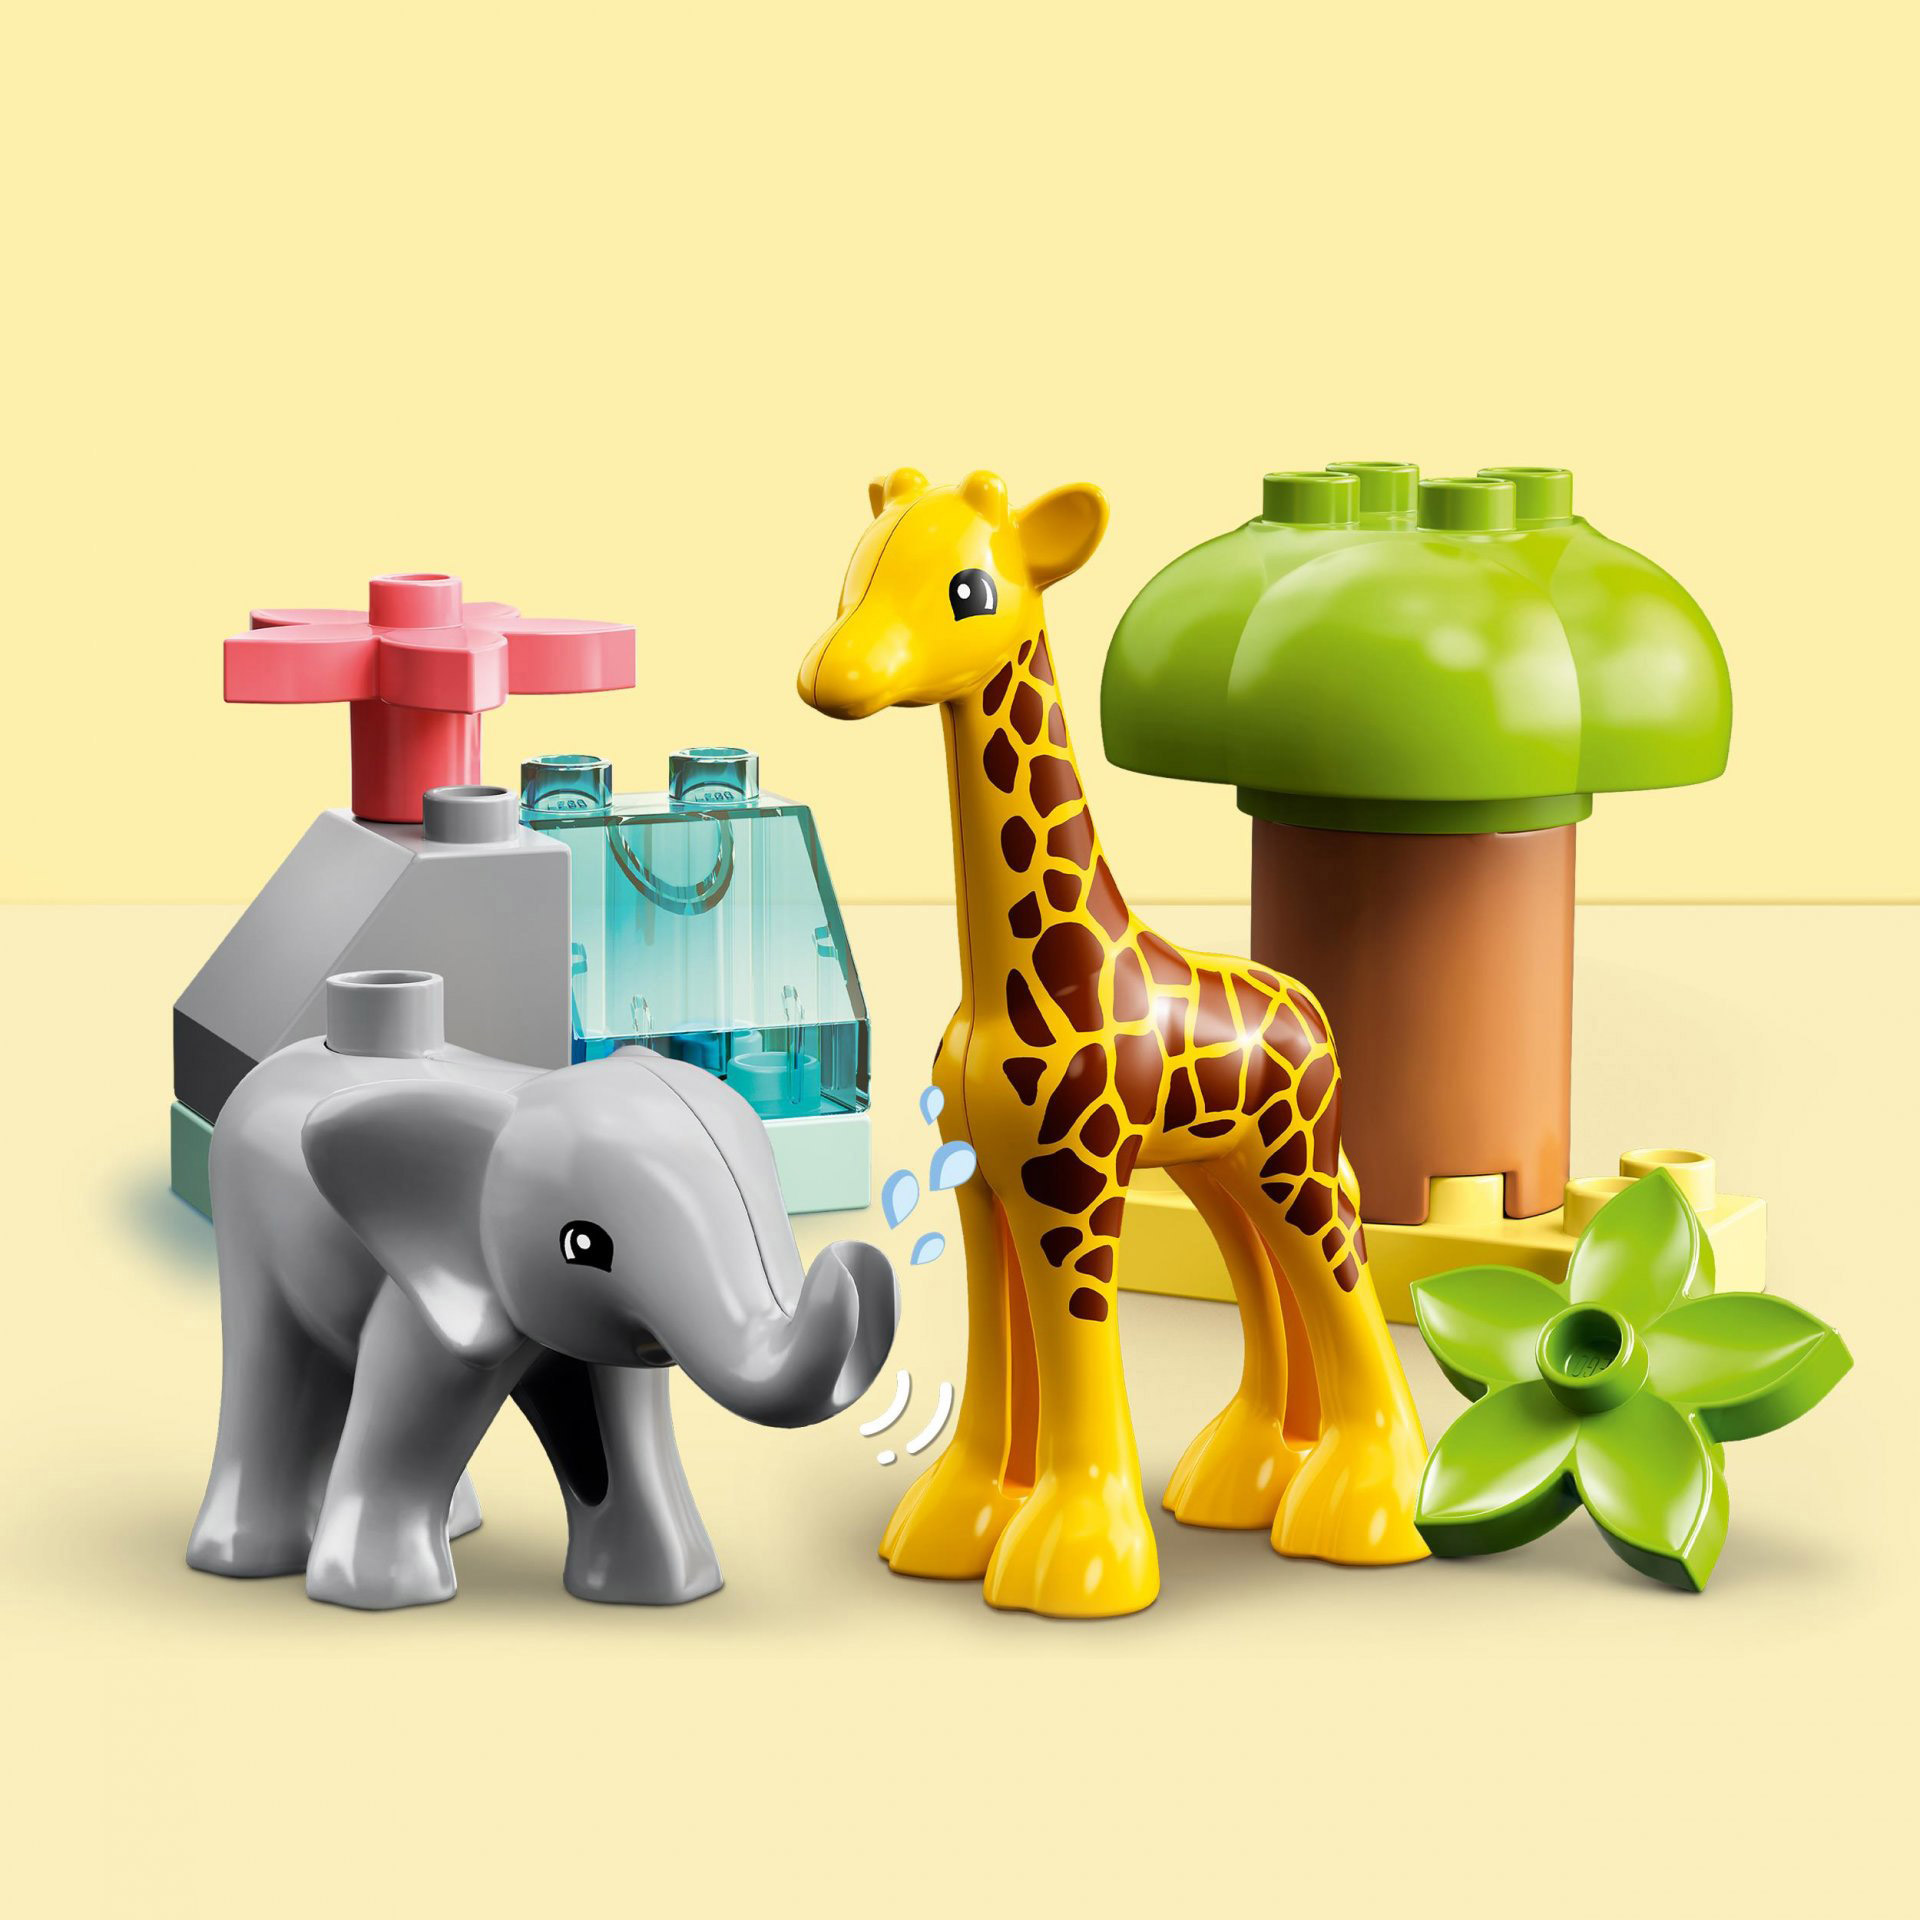 LEGO DUPLO Animali dell'Africa, Giochi Educativi per Bambini dai 2 Anni con Gir 10971, , large